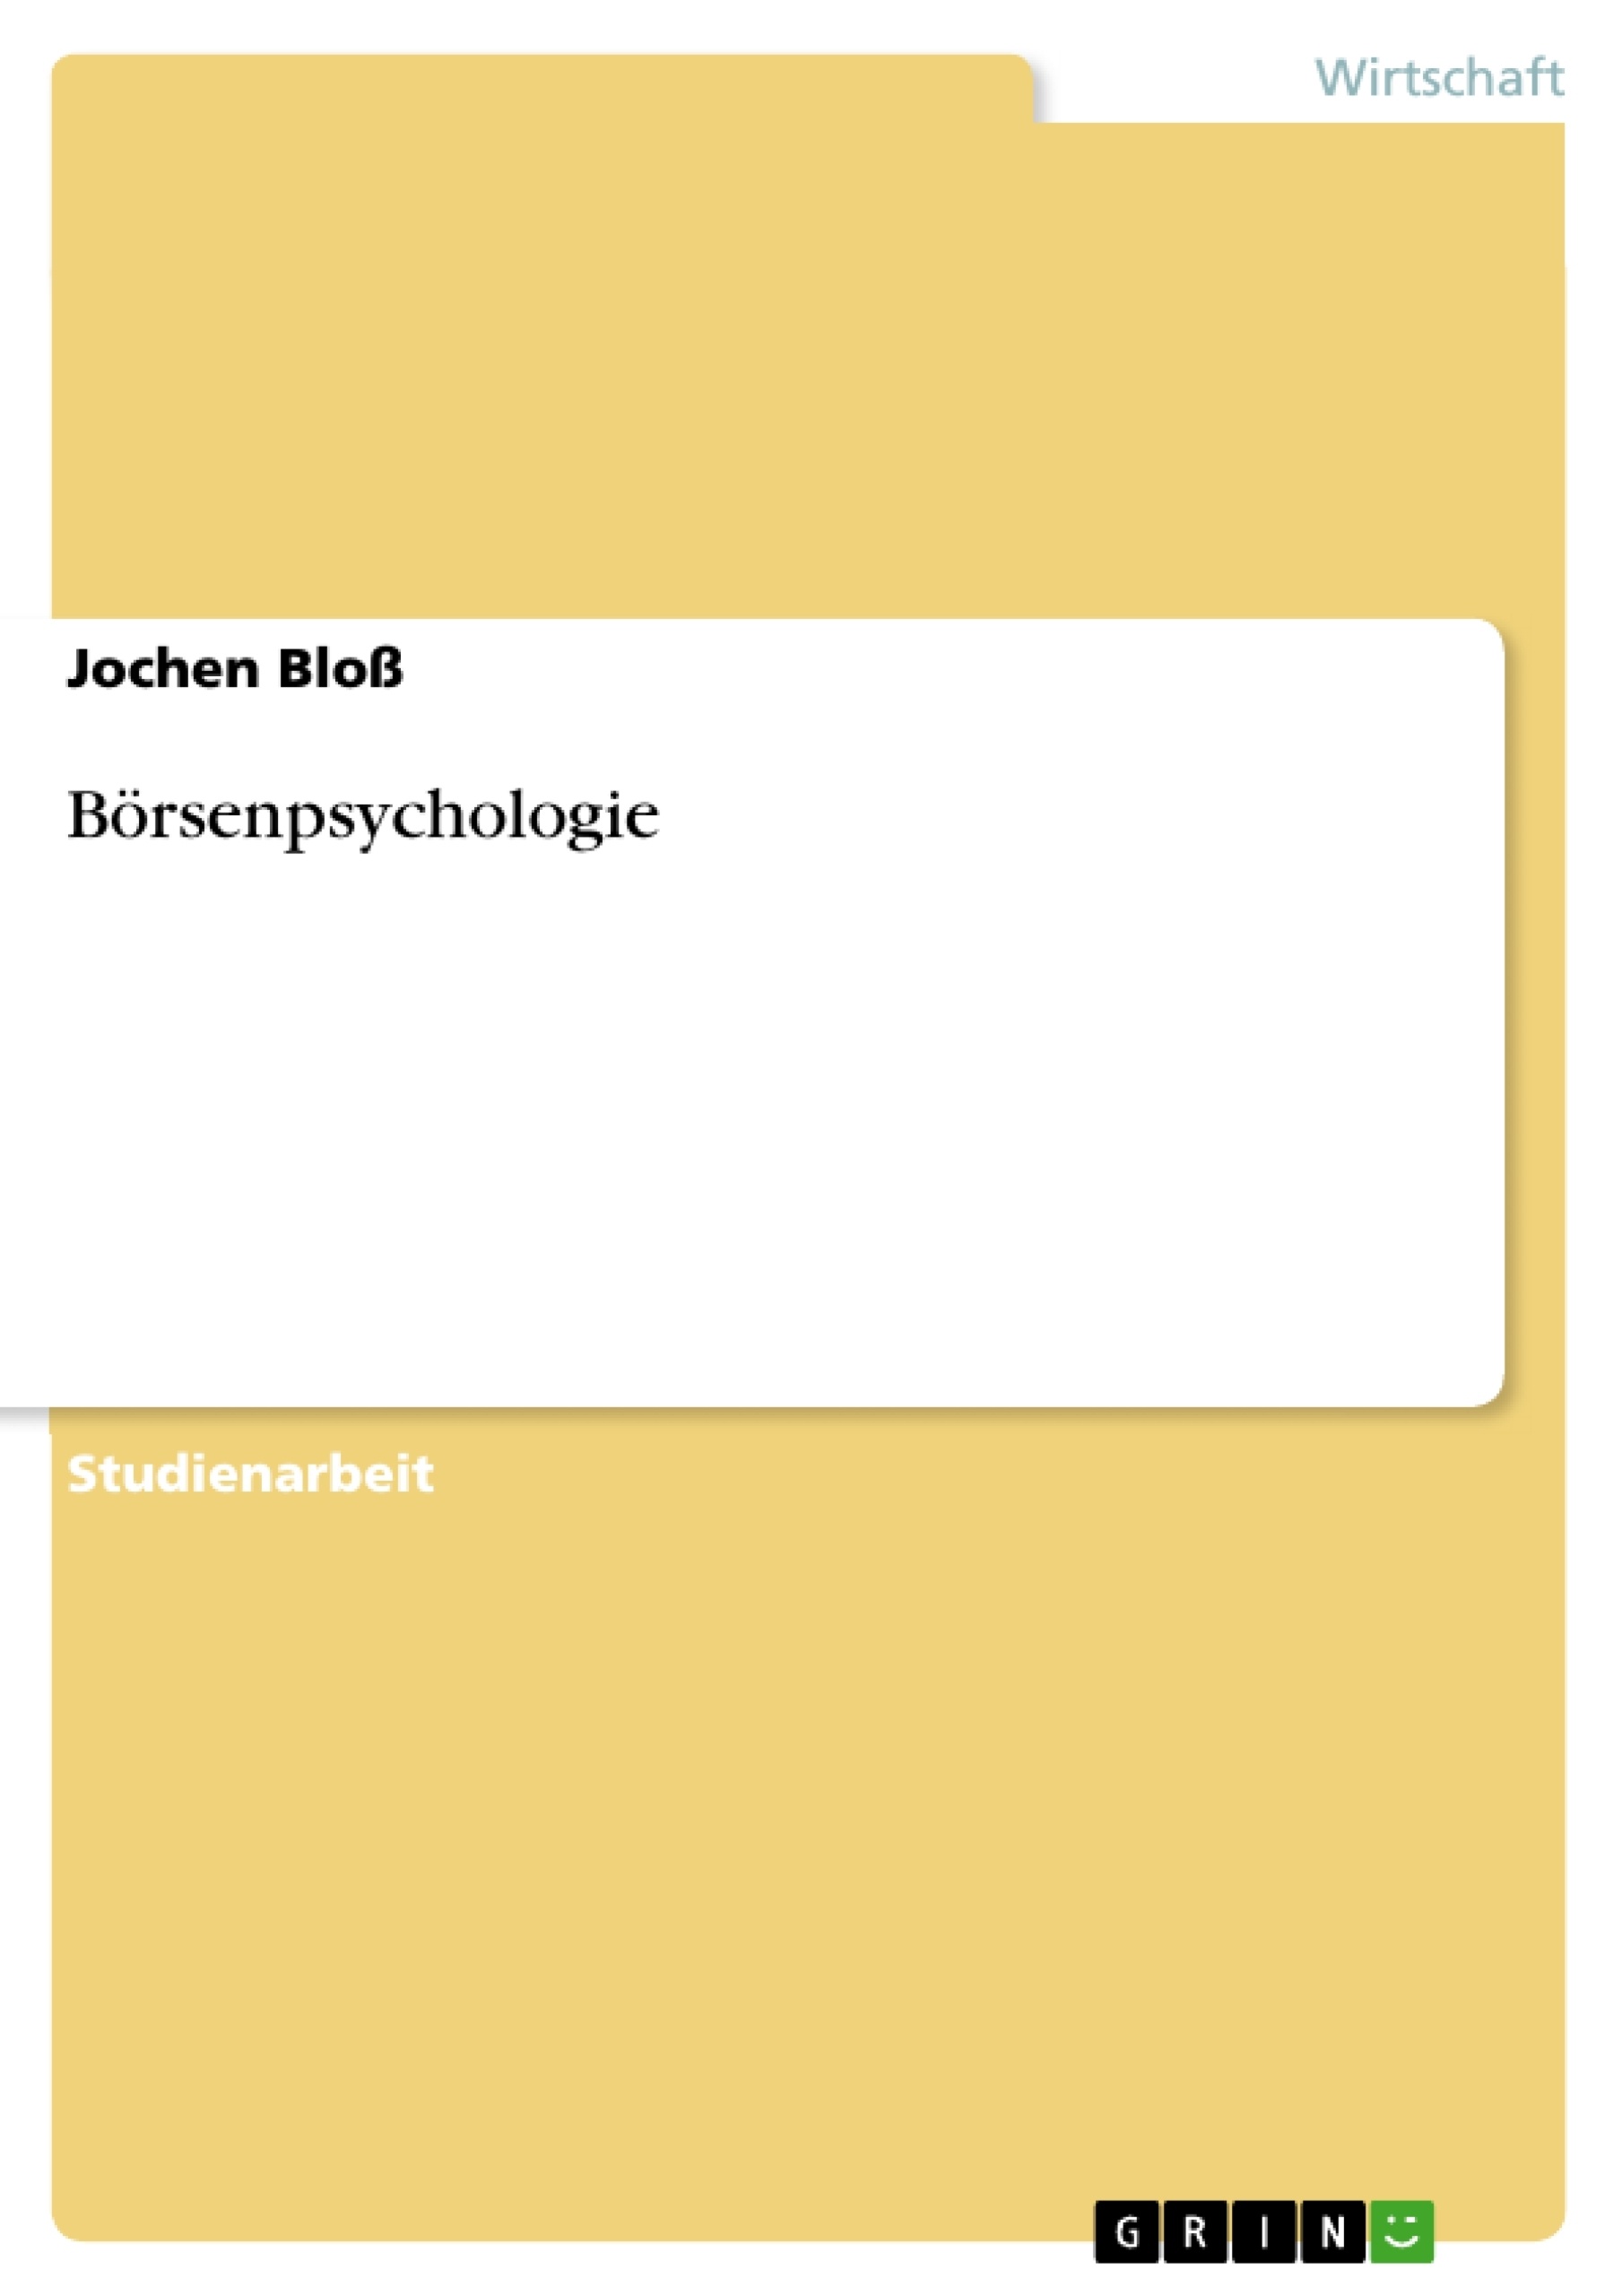 Título: Börsenpsychologie